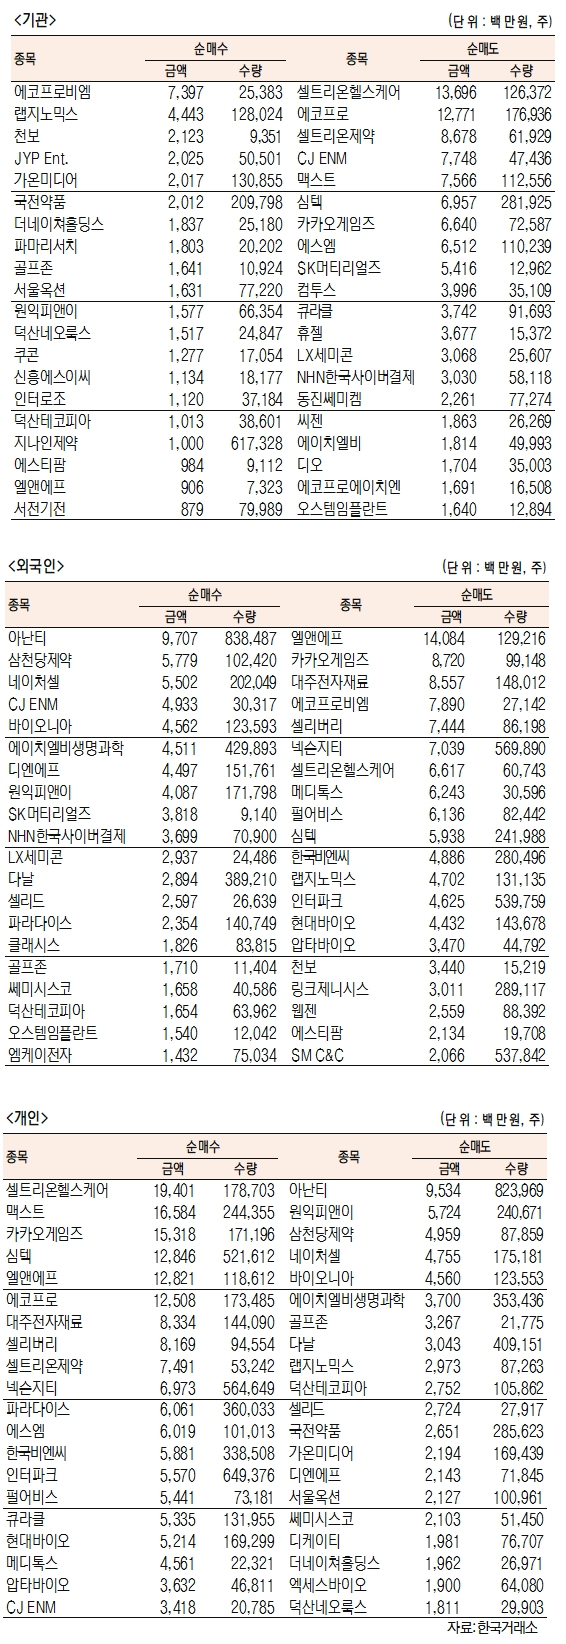 [표]코스닥 기관·외국인·개인 순매수·도 상위종목(7월 30일)